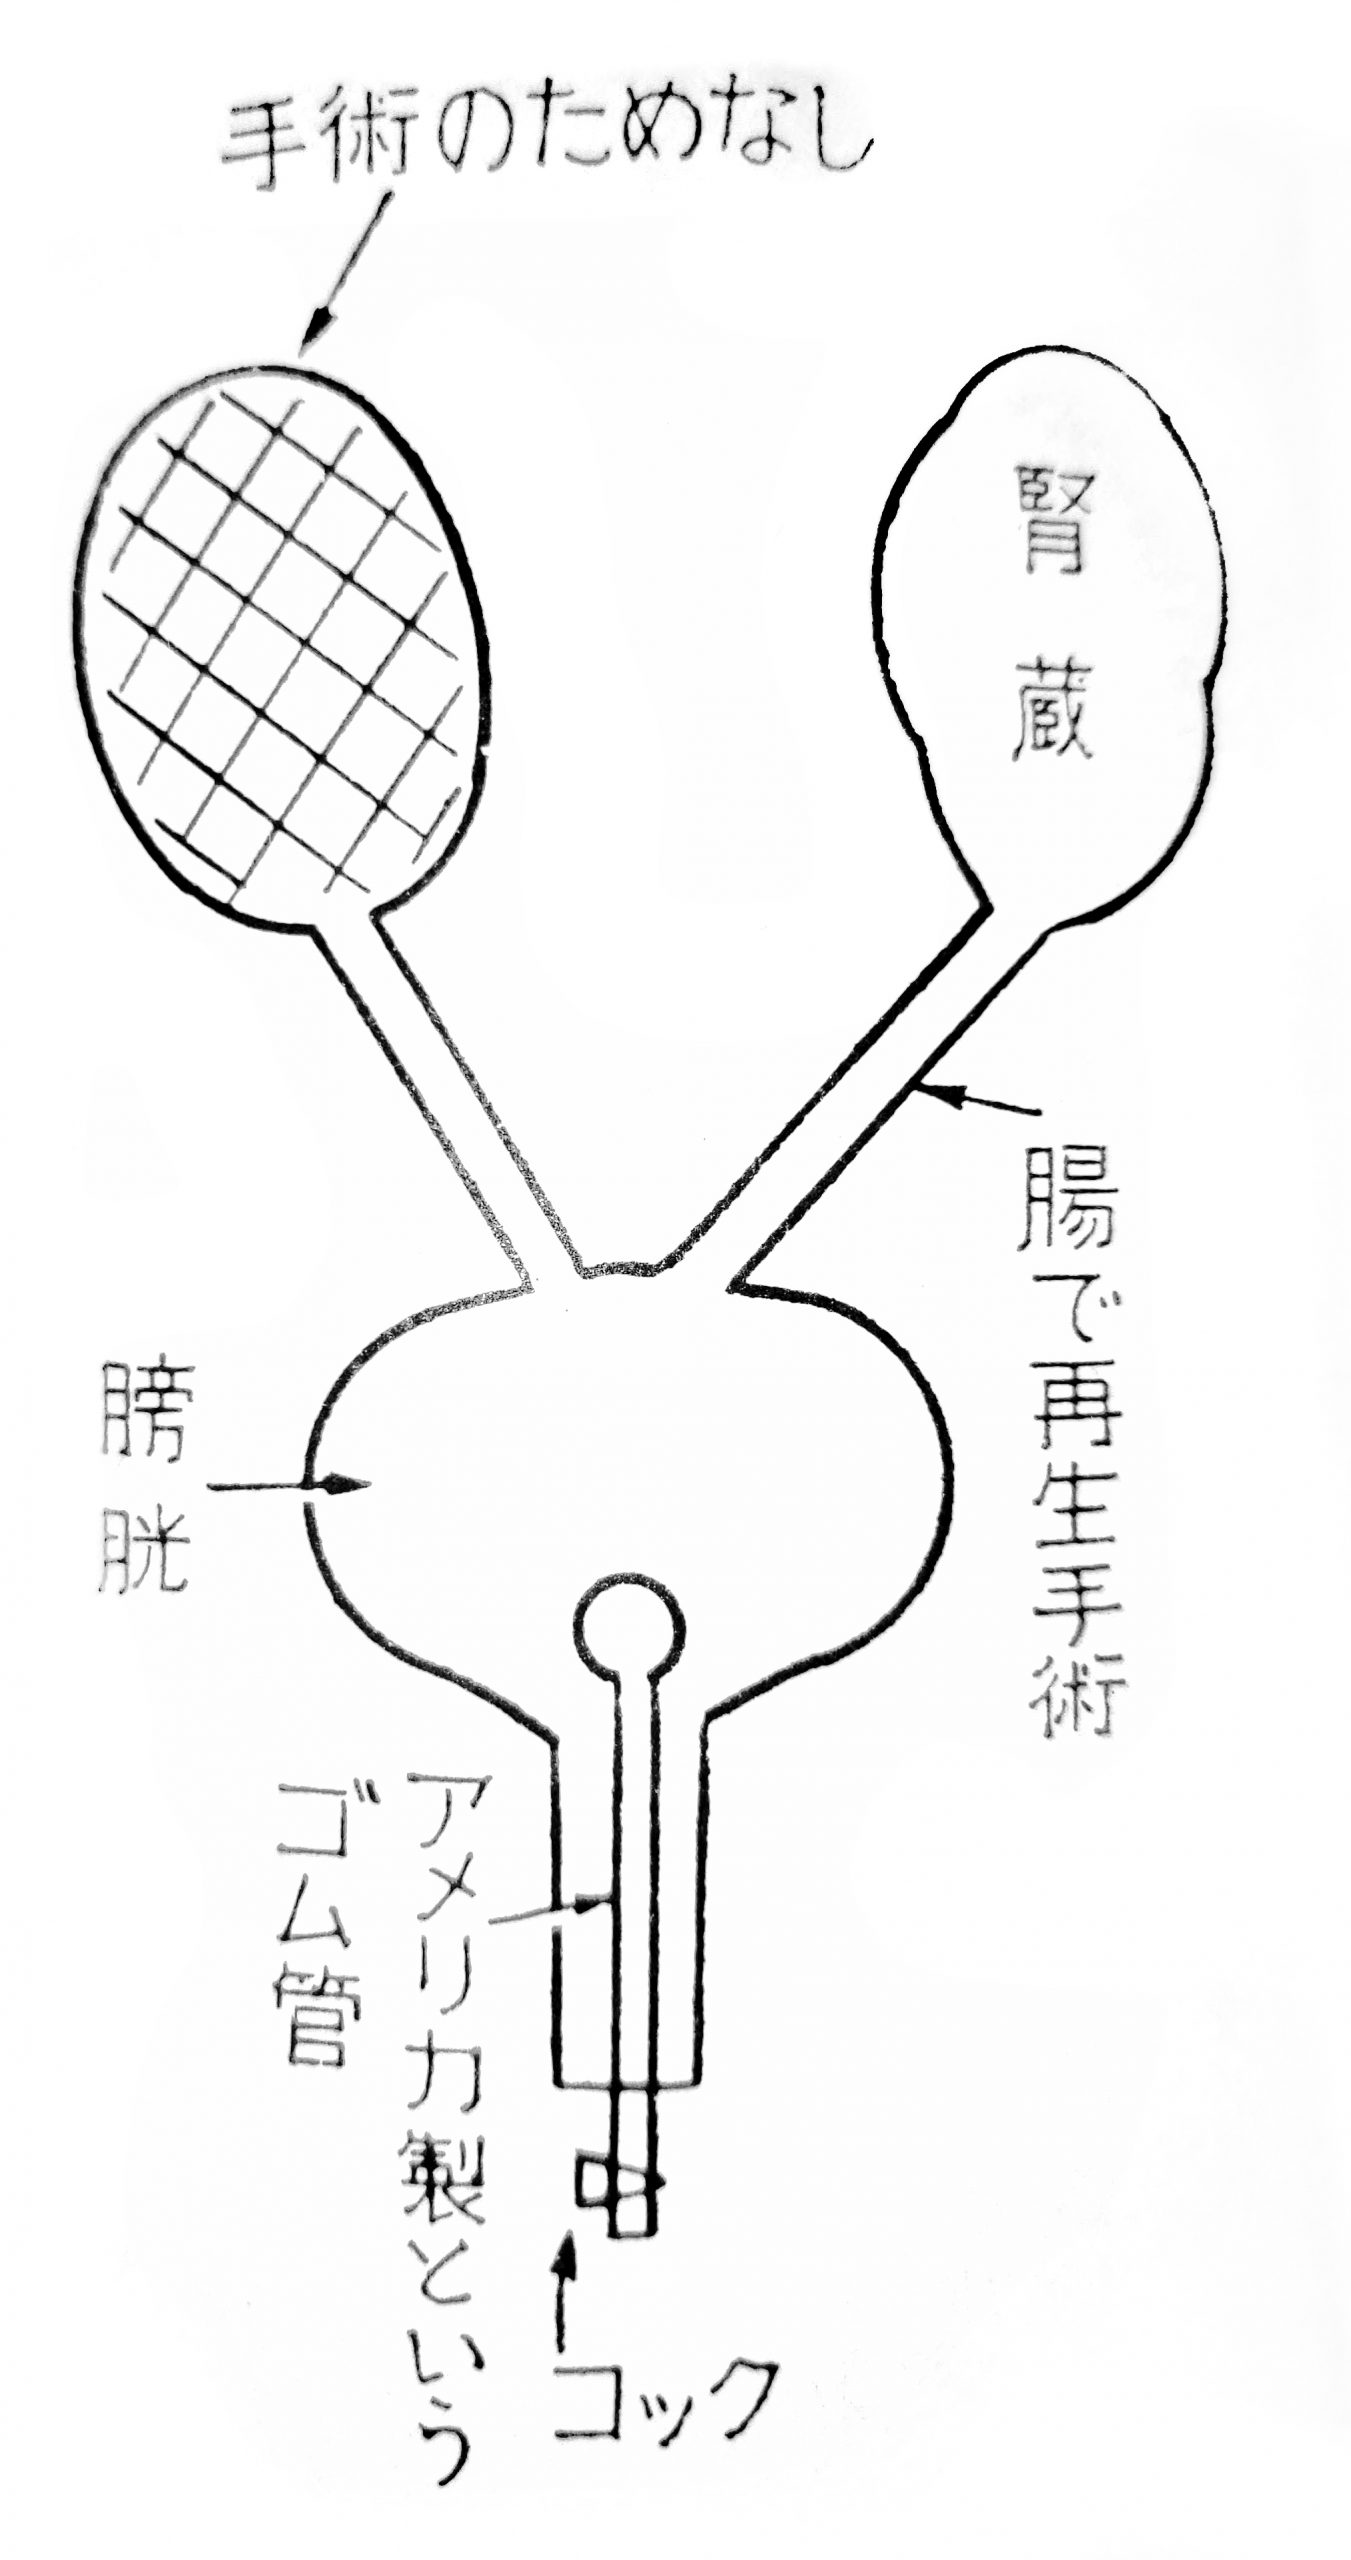 Jinzō 腎蔵 (Kidney Anatomy)